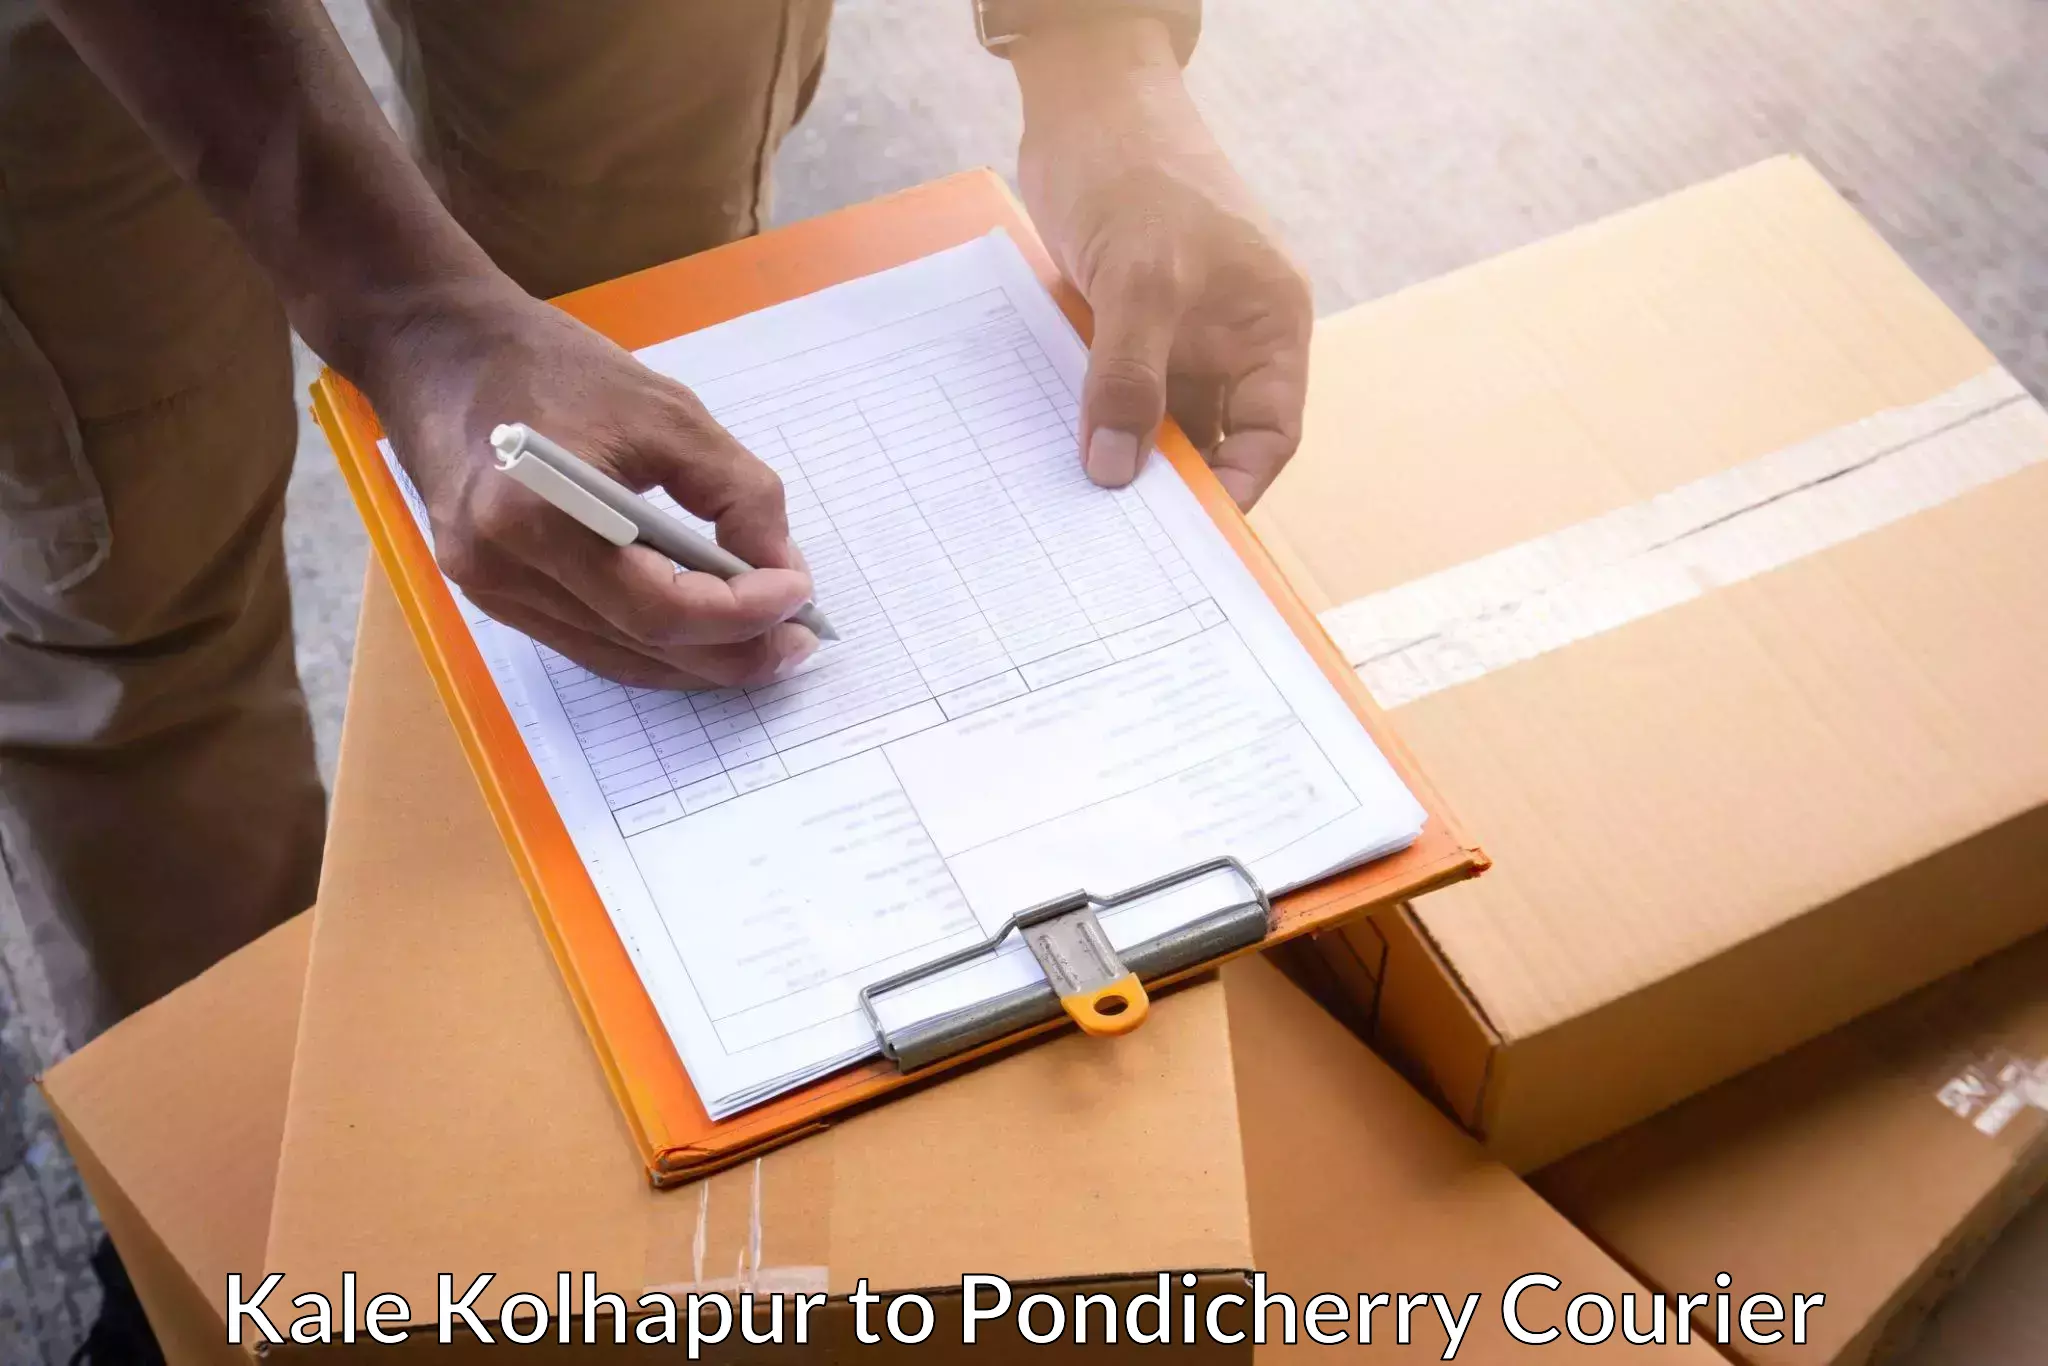 24/7 courier service Kale Kolhapur to NIT Puducherry